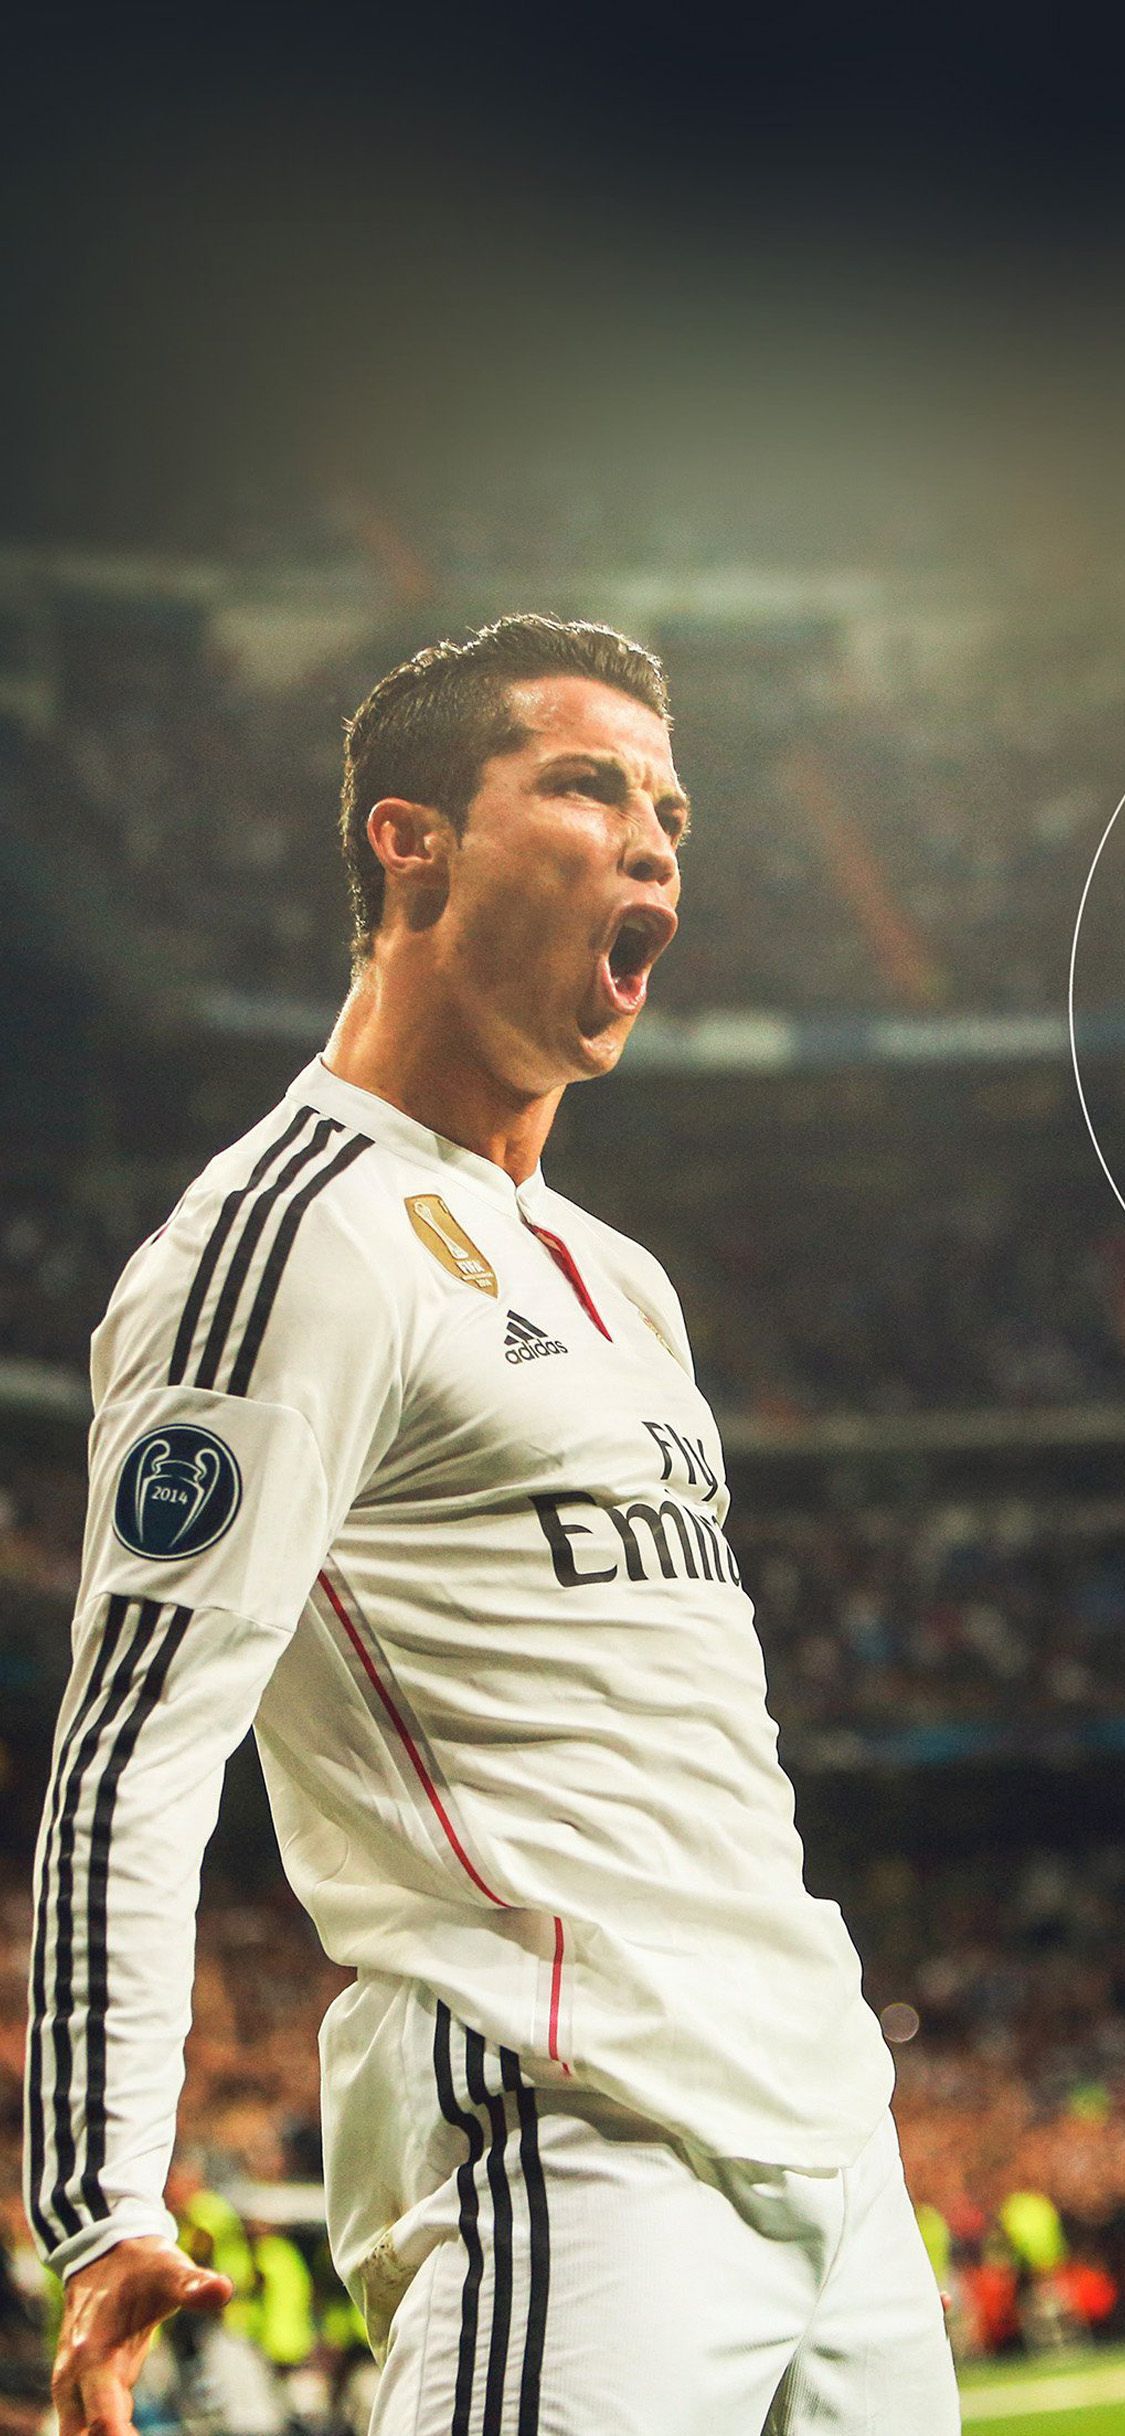 Top 55 Cristiano Ronaldo iPhone Wallpapers Download  HD   Cristiano  ronaldo wallpapers Ronaldo wallpapers Ronaldo photos